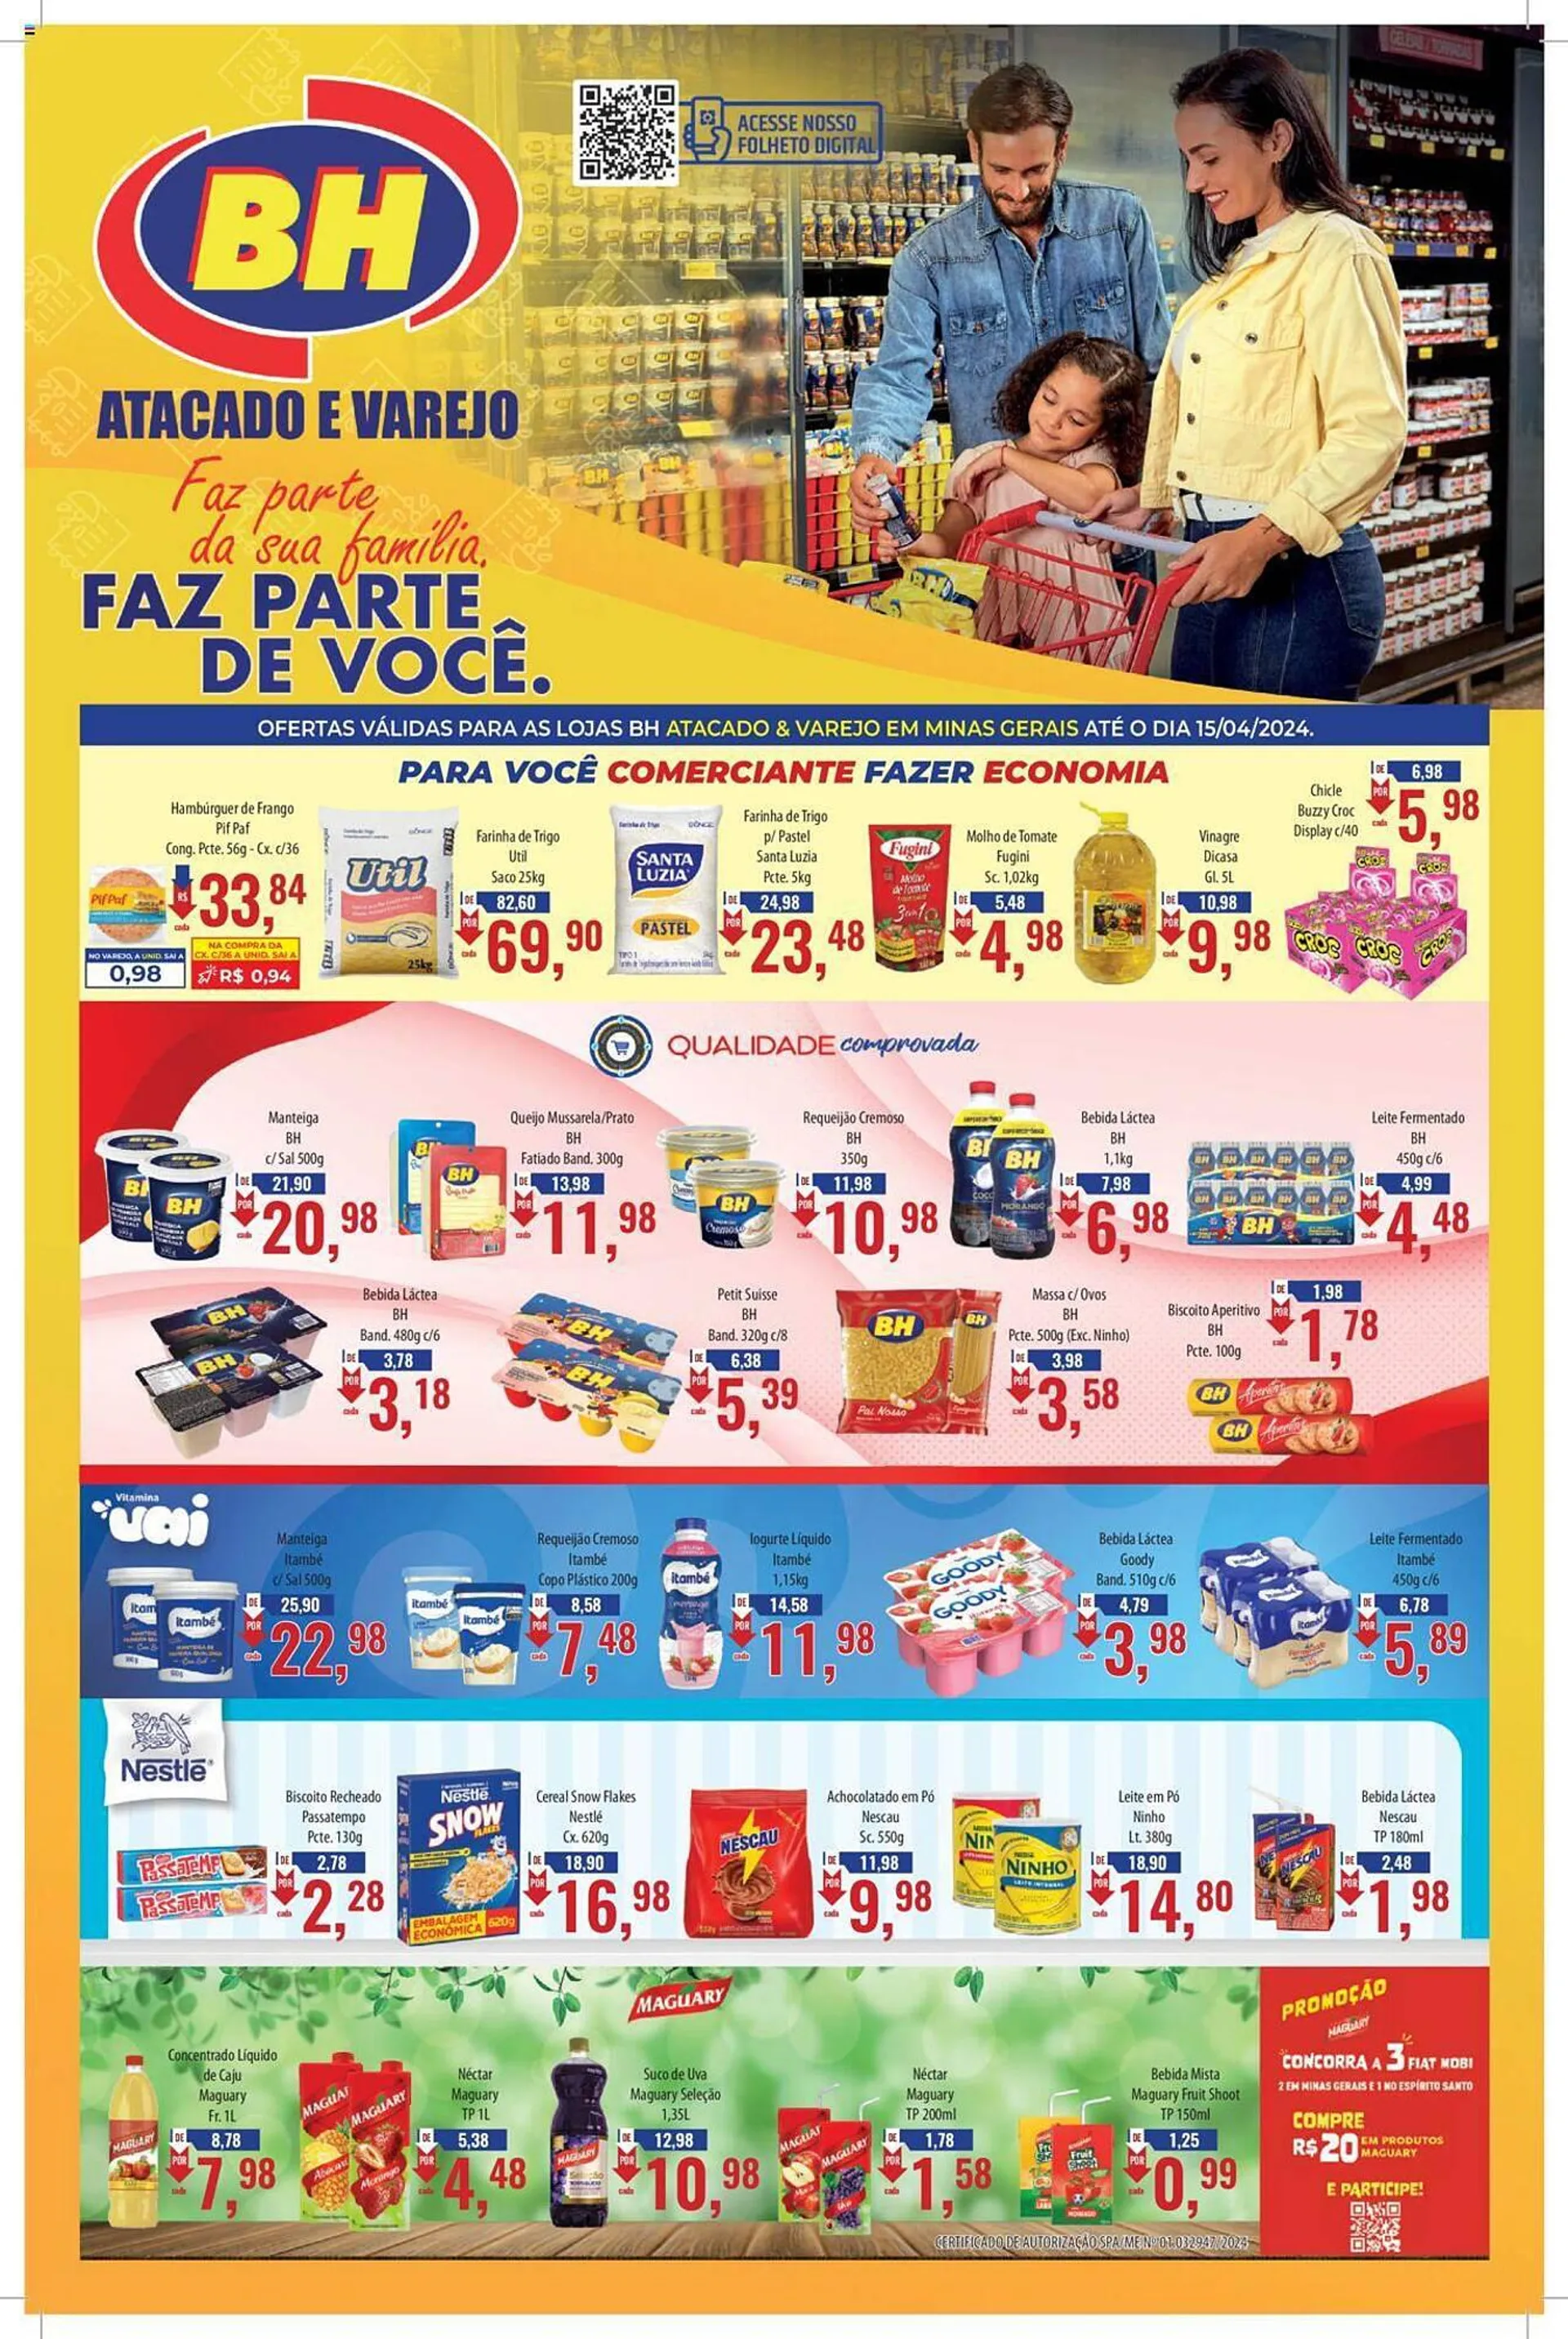 Encarte de Catálogo Supermercados BH 2 de abril até 15 de abril 2024 - Pagina 